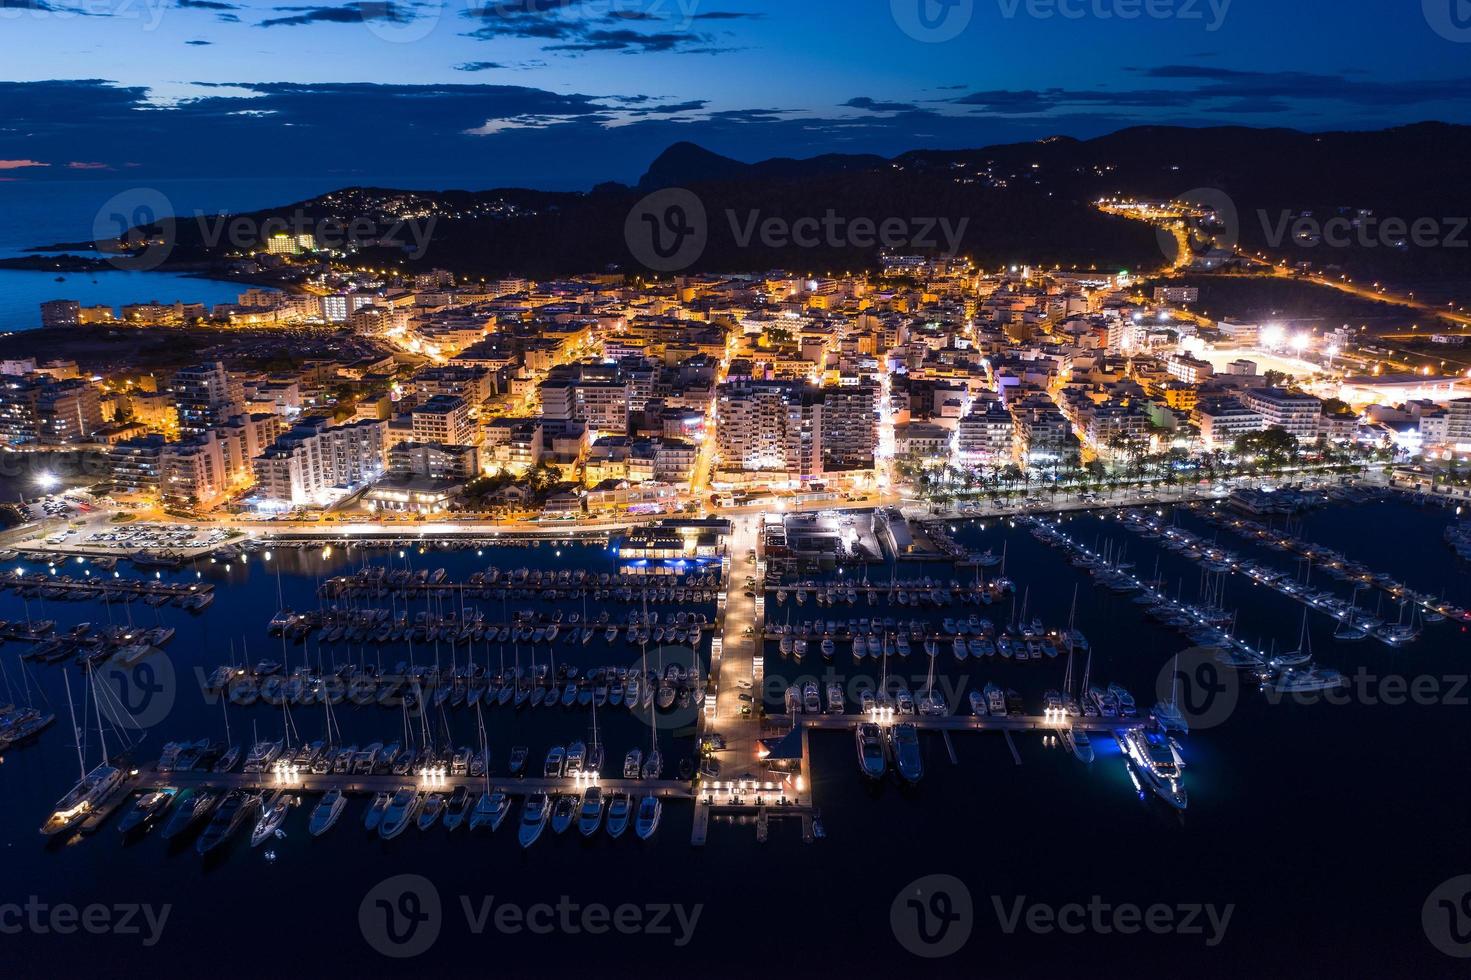 vista aérea do porto da cidade à noite. foto